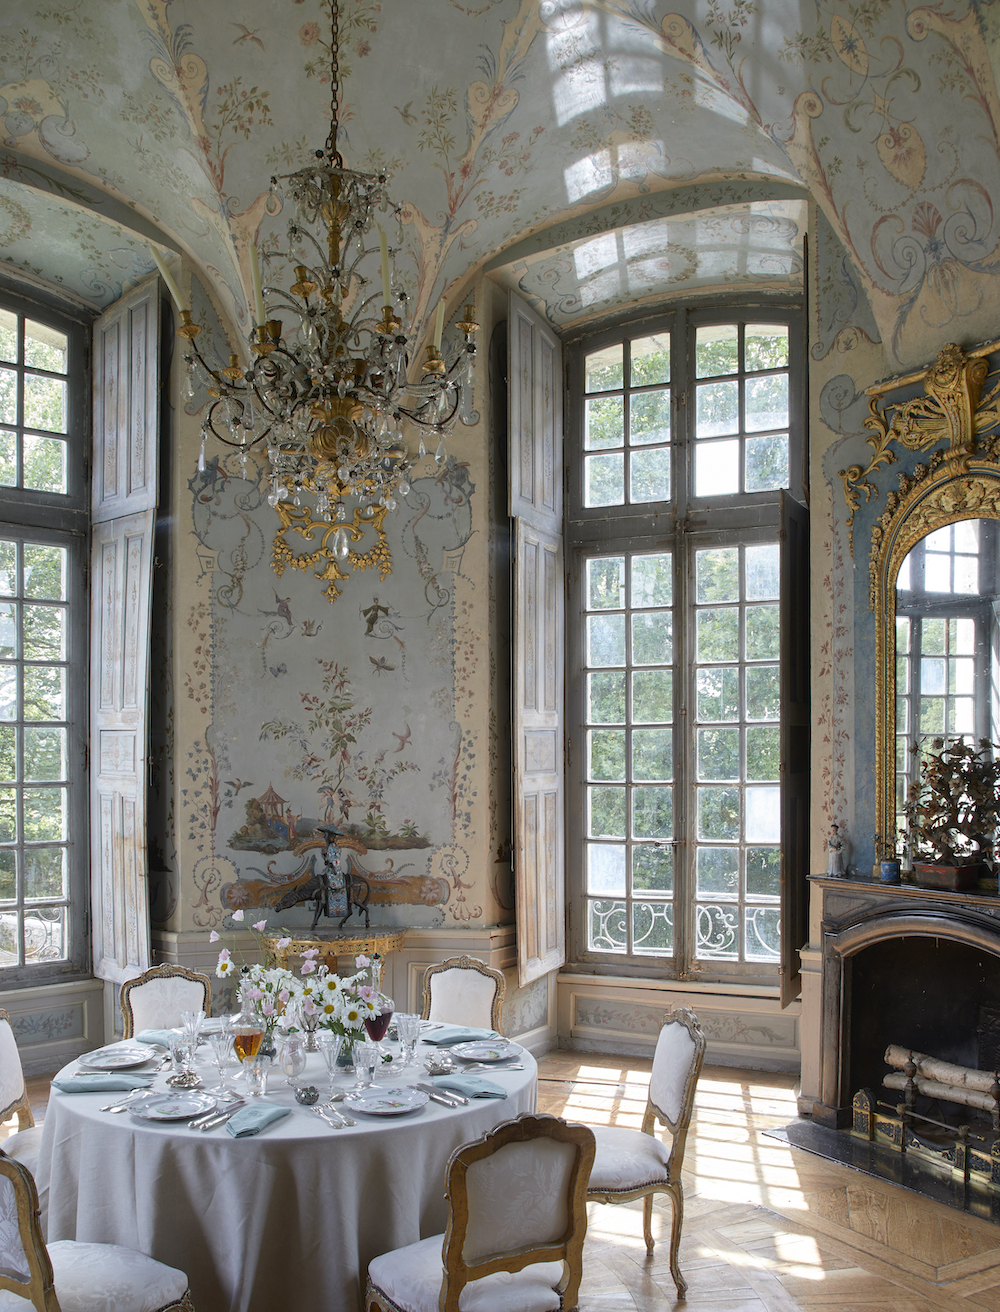 Salon Pillement at the Chateau de Haroue, photo by Miguel Flores-Vianna